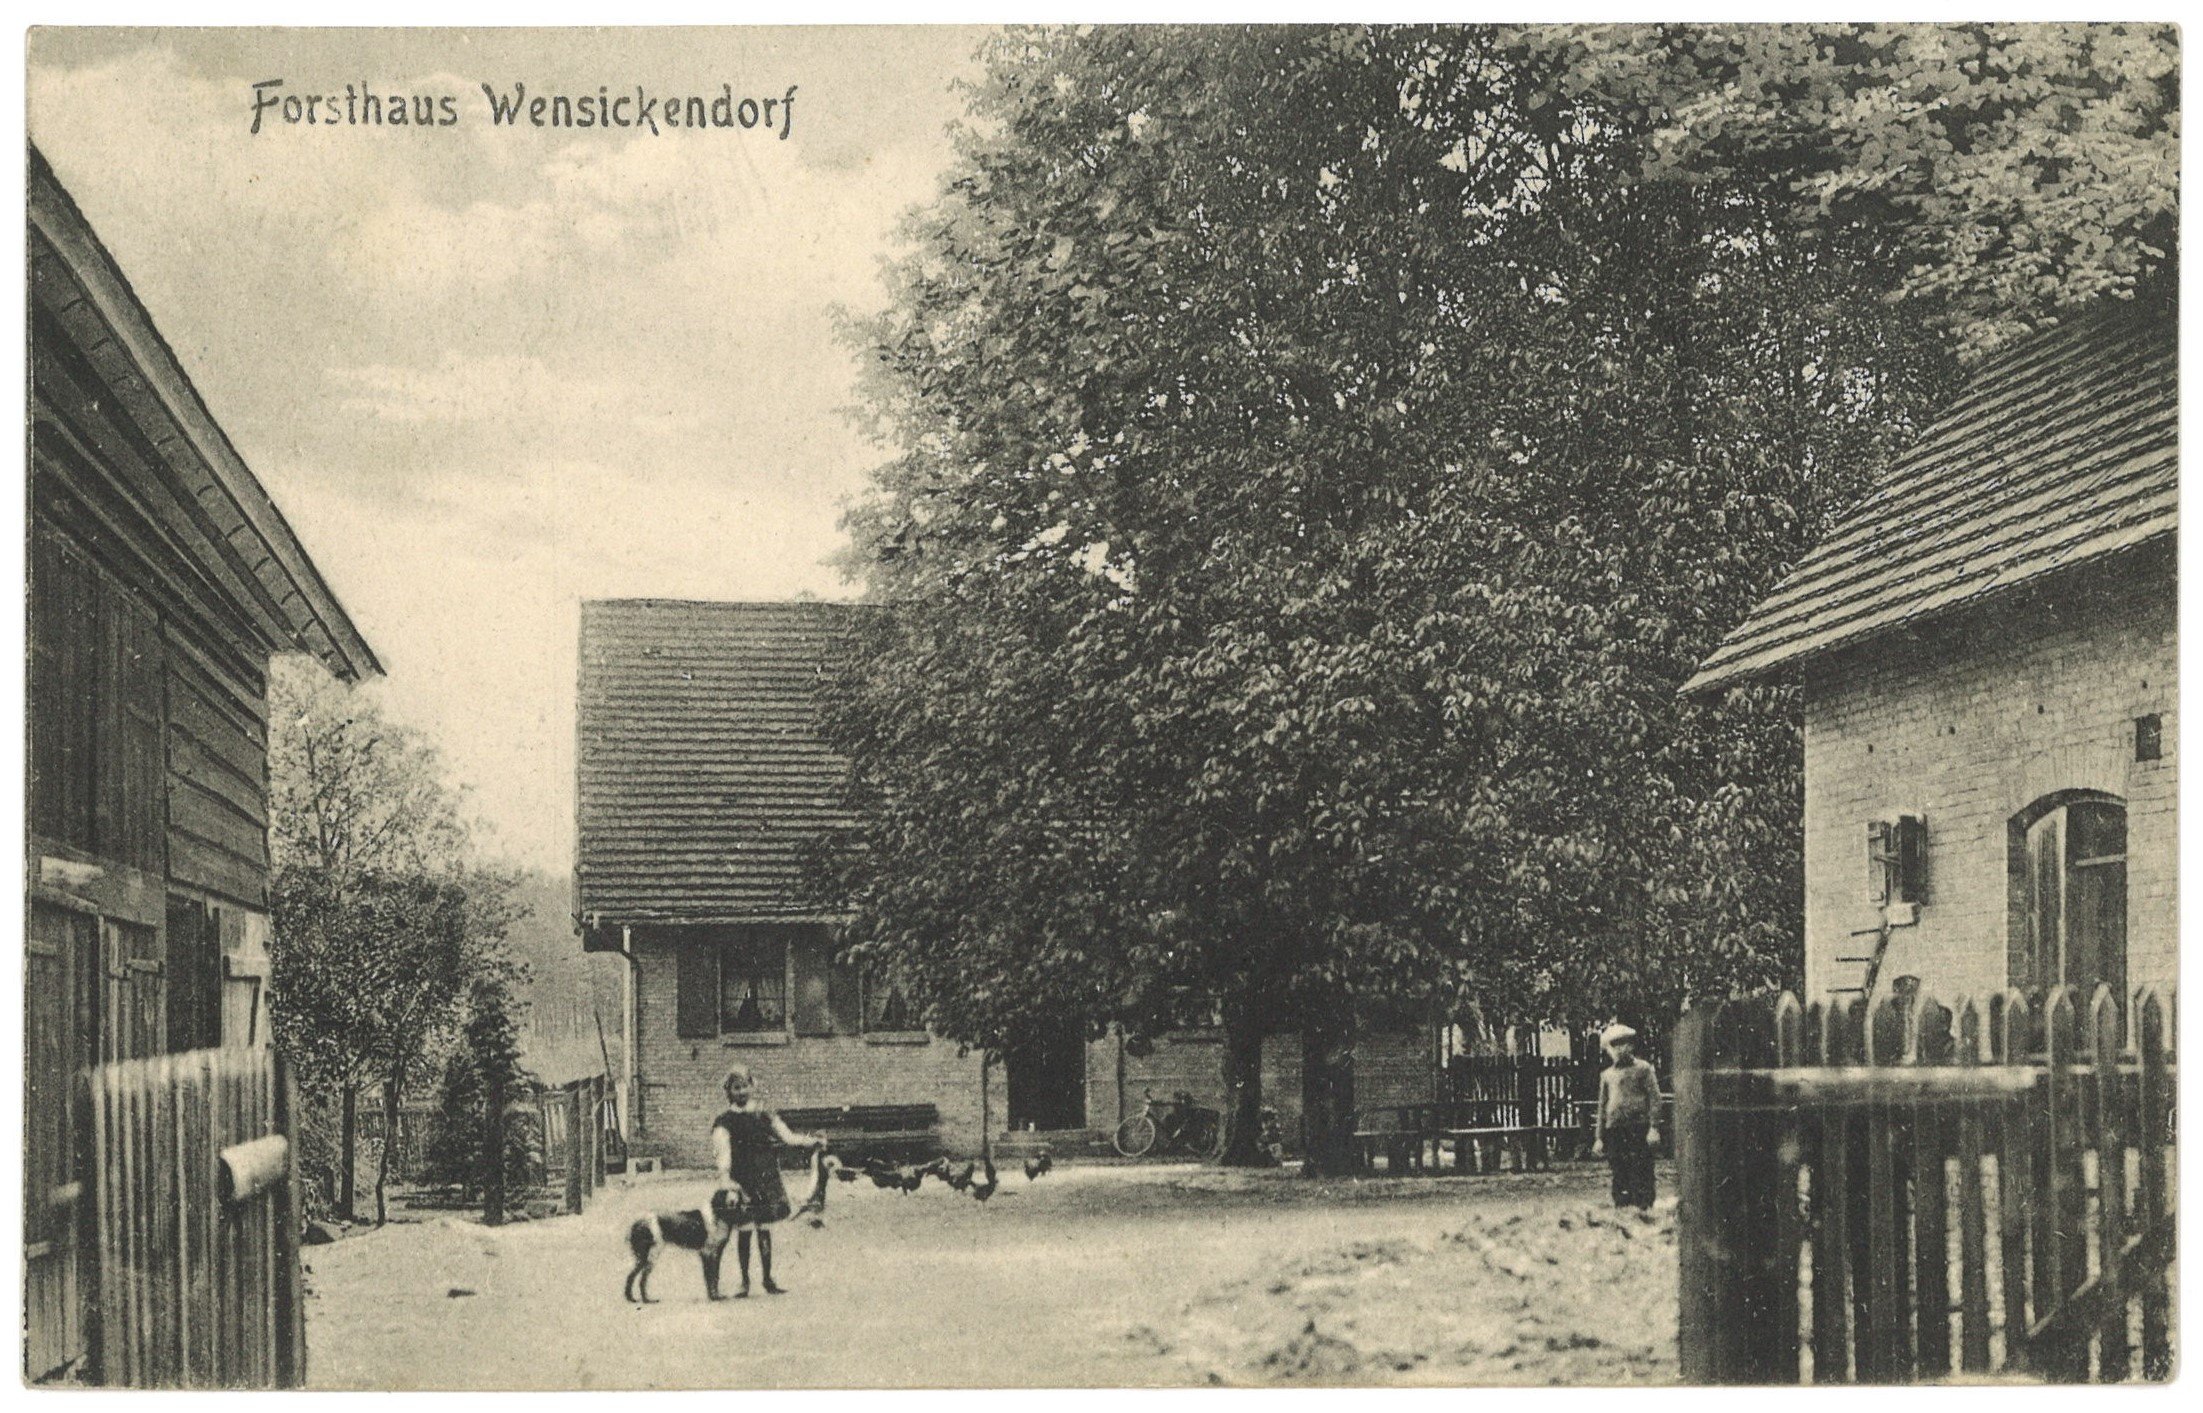 Wensickendorf: Forsthaus (Landesgeschichtliche Vereinigung für die Mark Brandenburg e.V. CC BY)